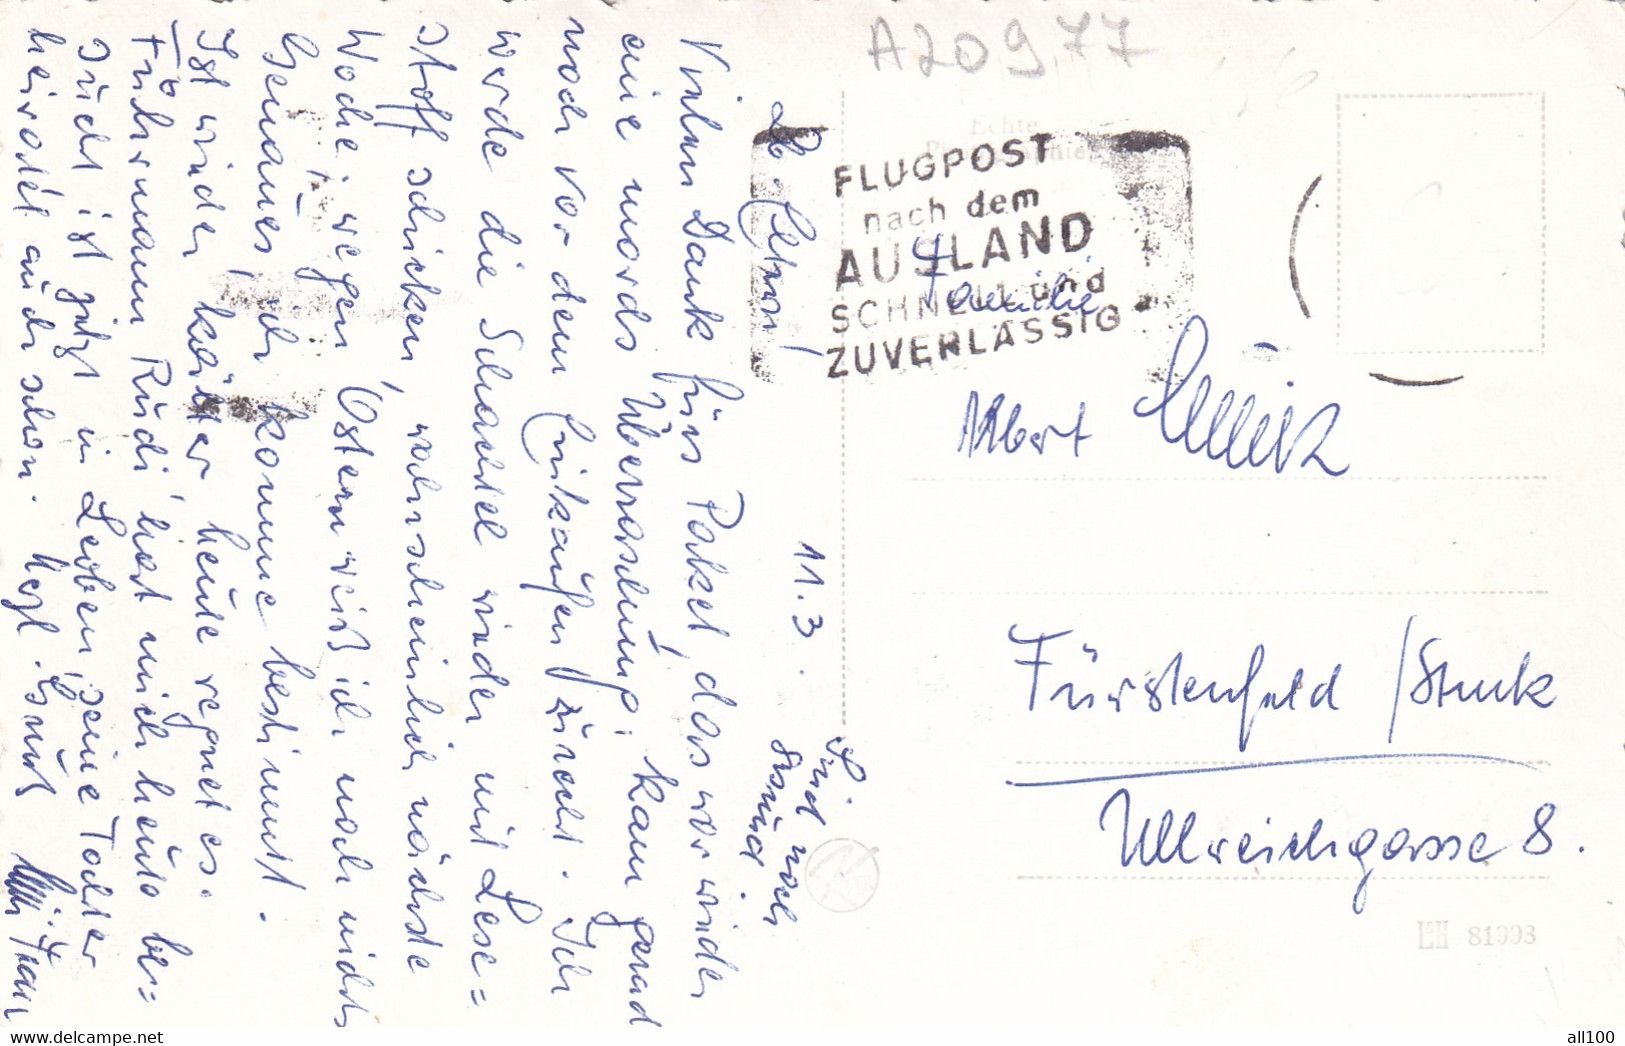 A20977 - WIEN VIENNA SCHLOSS BELVEDERE CASTLE POST CARD USED FLUGPOST NACH DEM AUSLAND SCHNELL UND ZUVERLASSIG - Belvedere